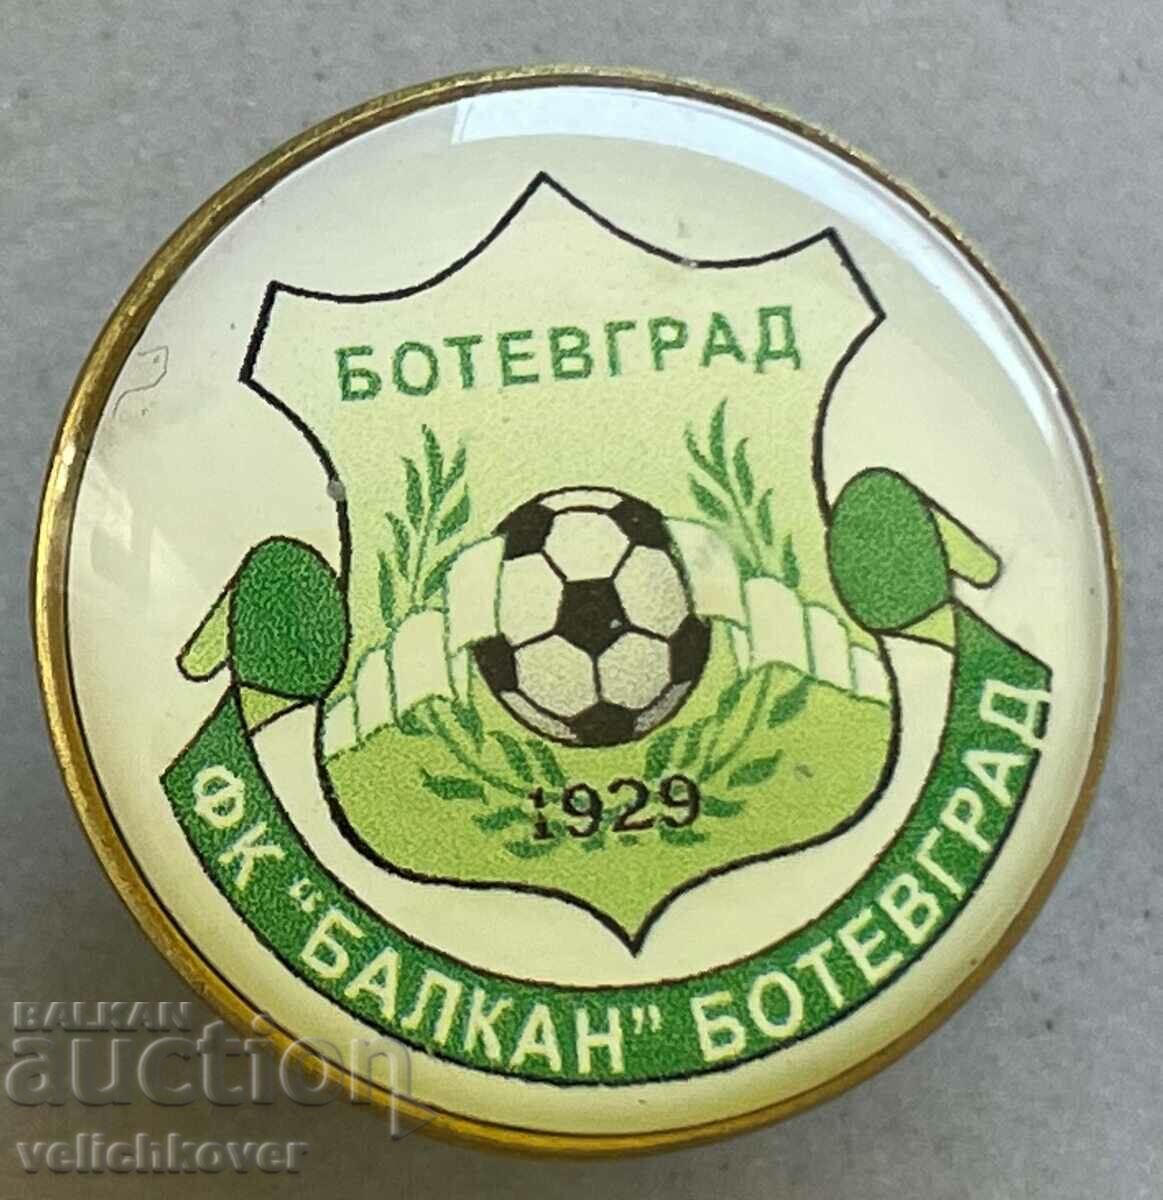 34950 Η Βουλγαρία υπογράφει την ποδοσφαιρική ομάδα Balkan Botevgrad